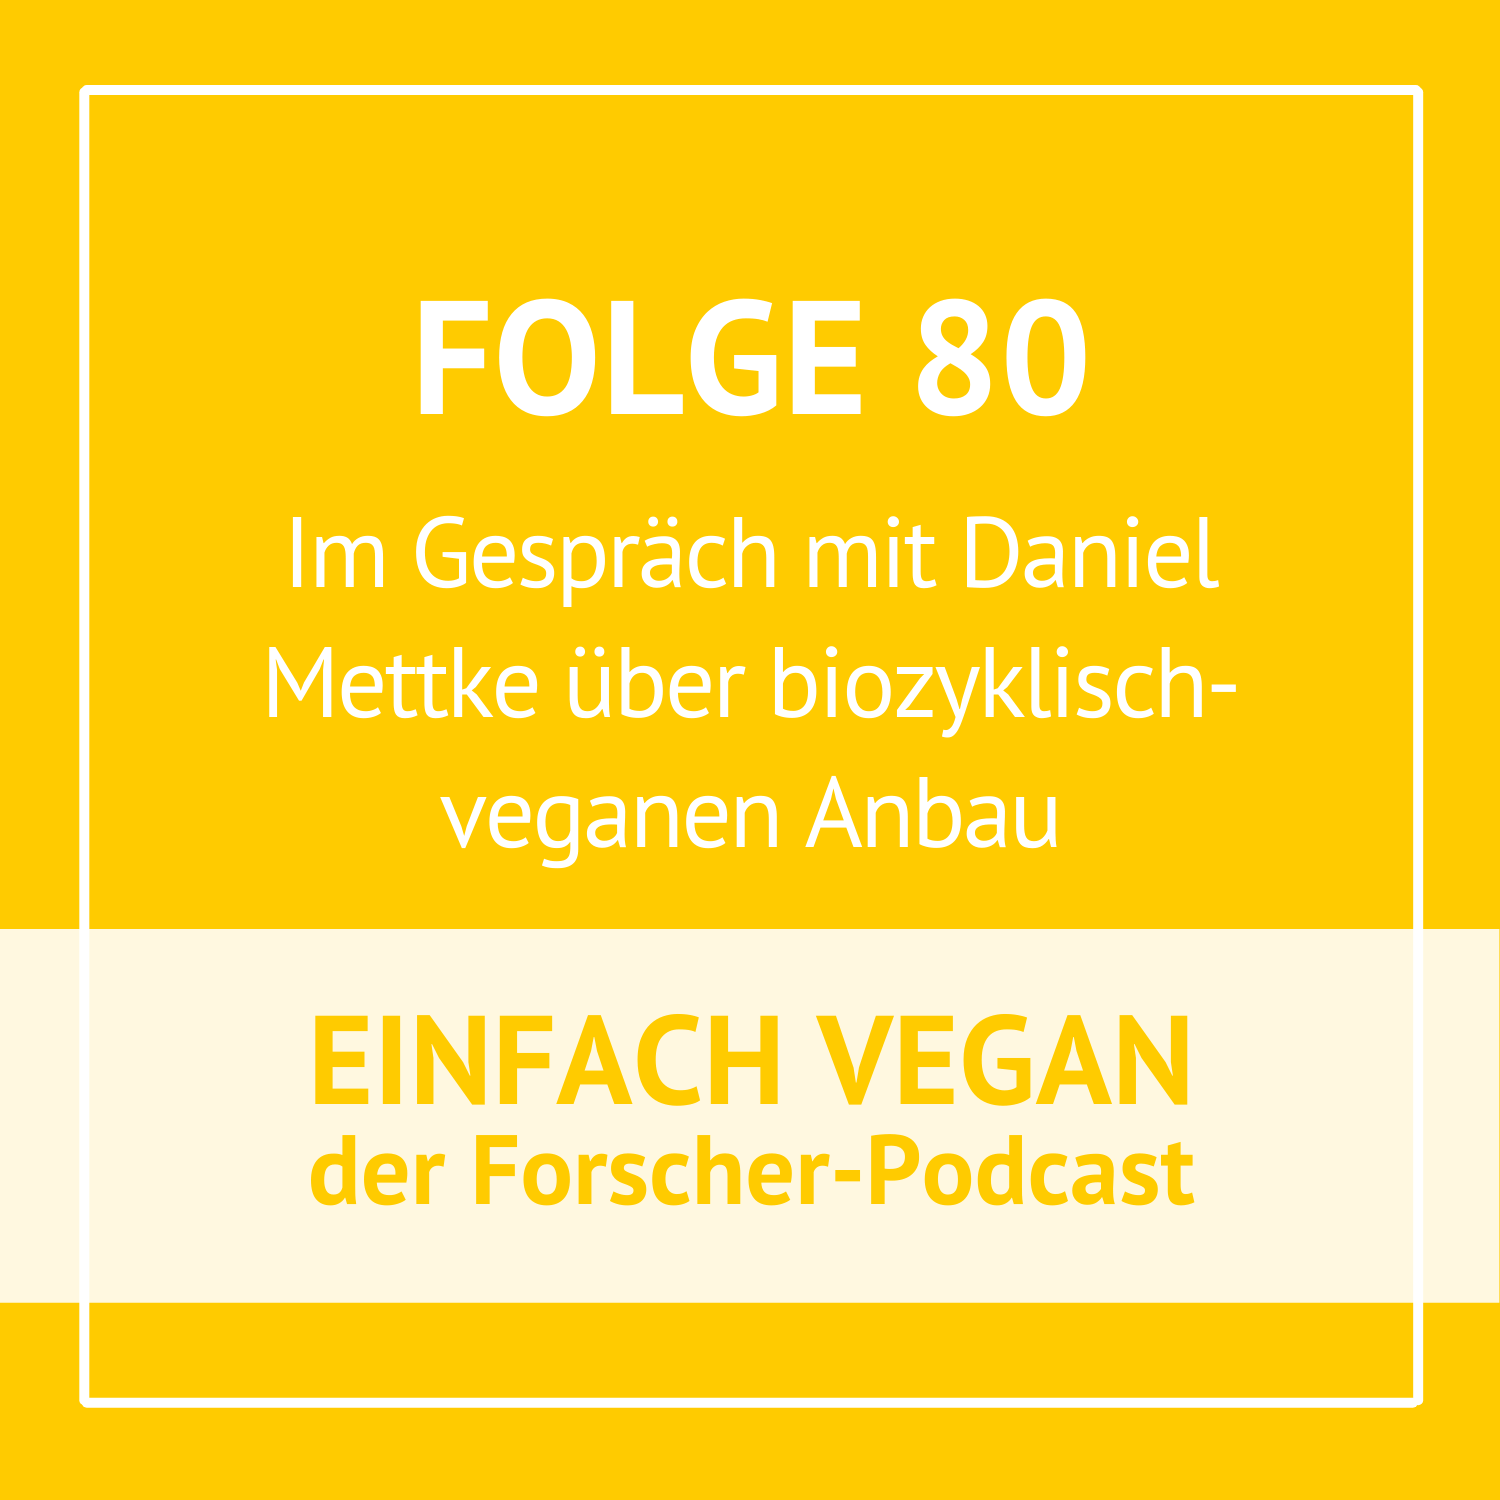 Folge 80 - Im Gespräch mit Daniel Mettke